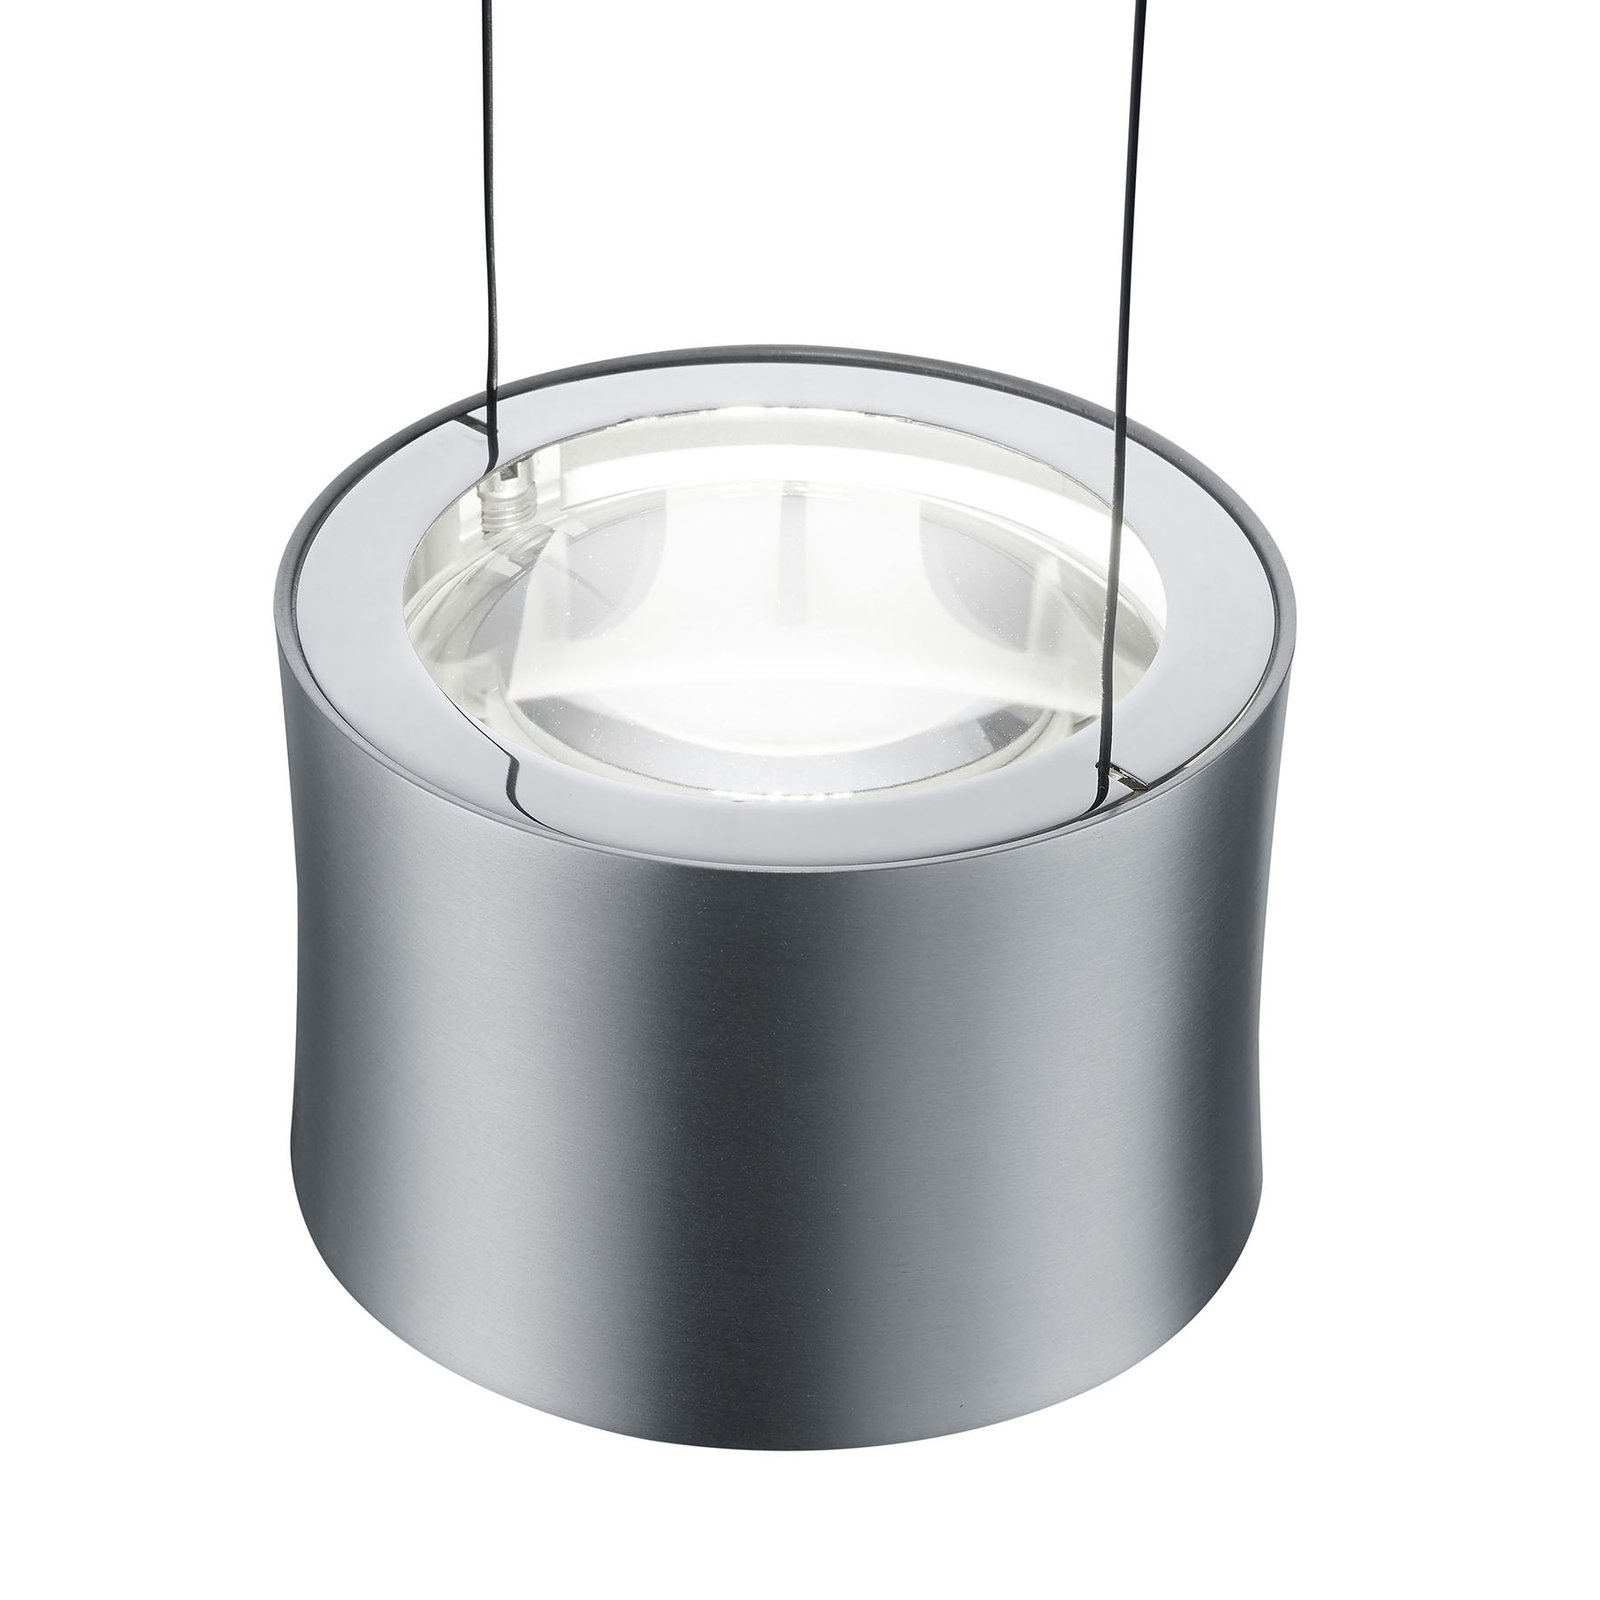 BANKAMP Impulse LED hanglamp 1-lamp nikkel